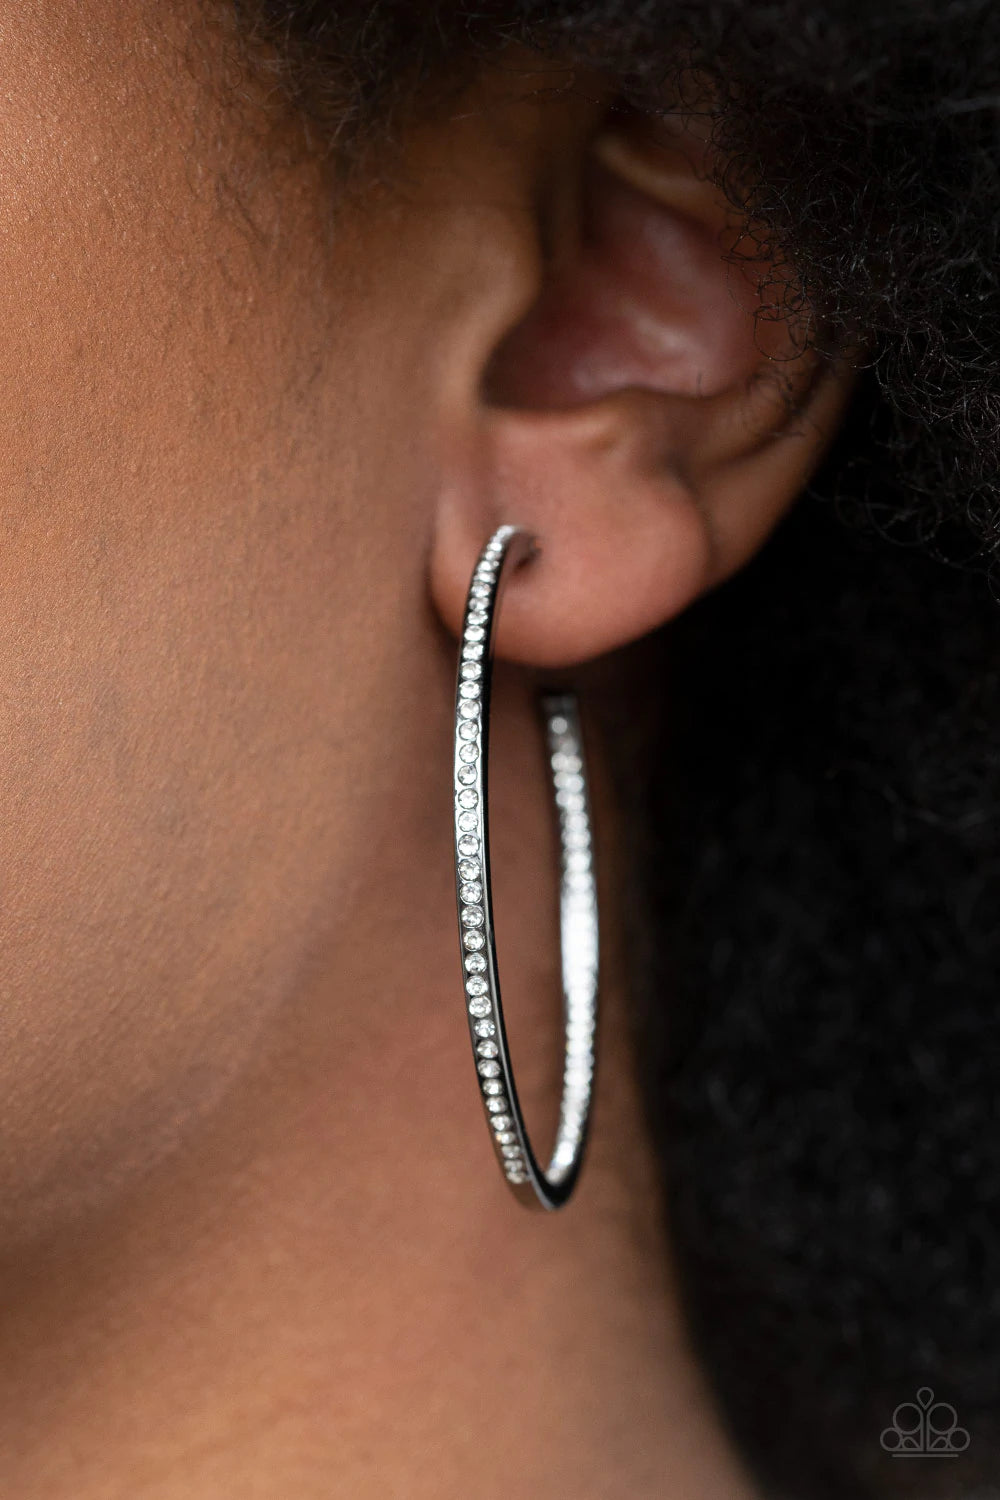 Marquee Magic Black Earrings - Jewelry by Bretta